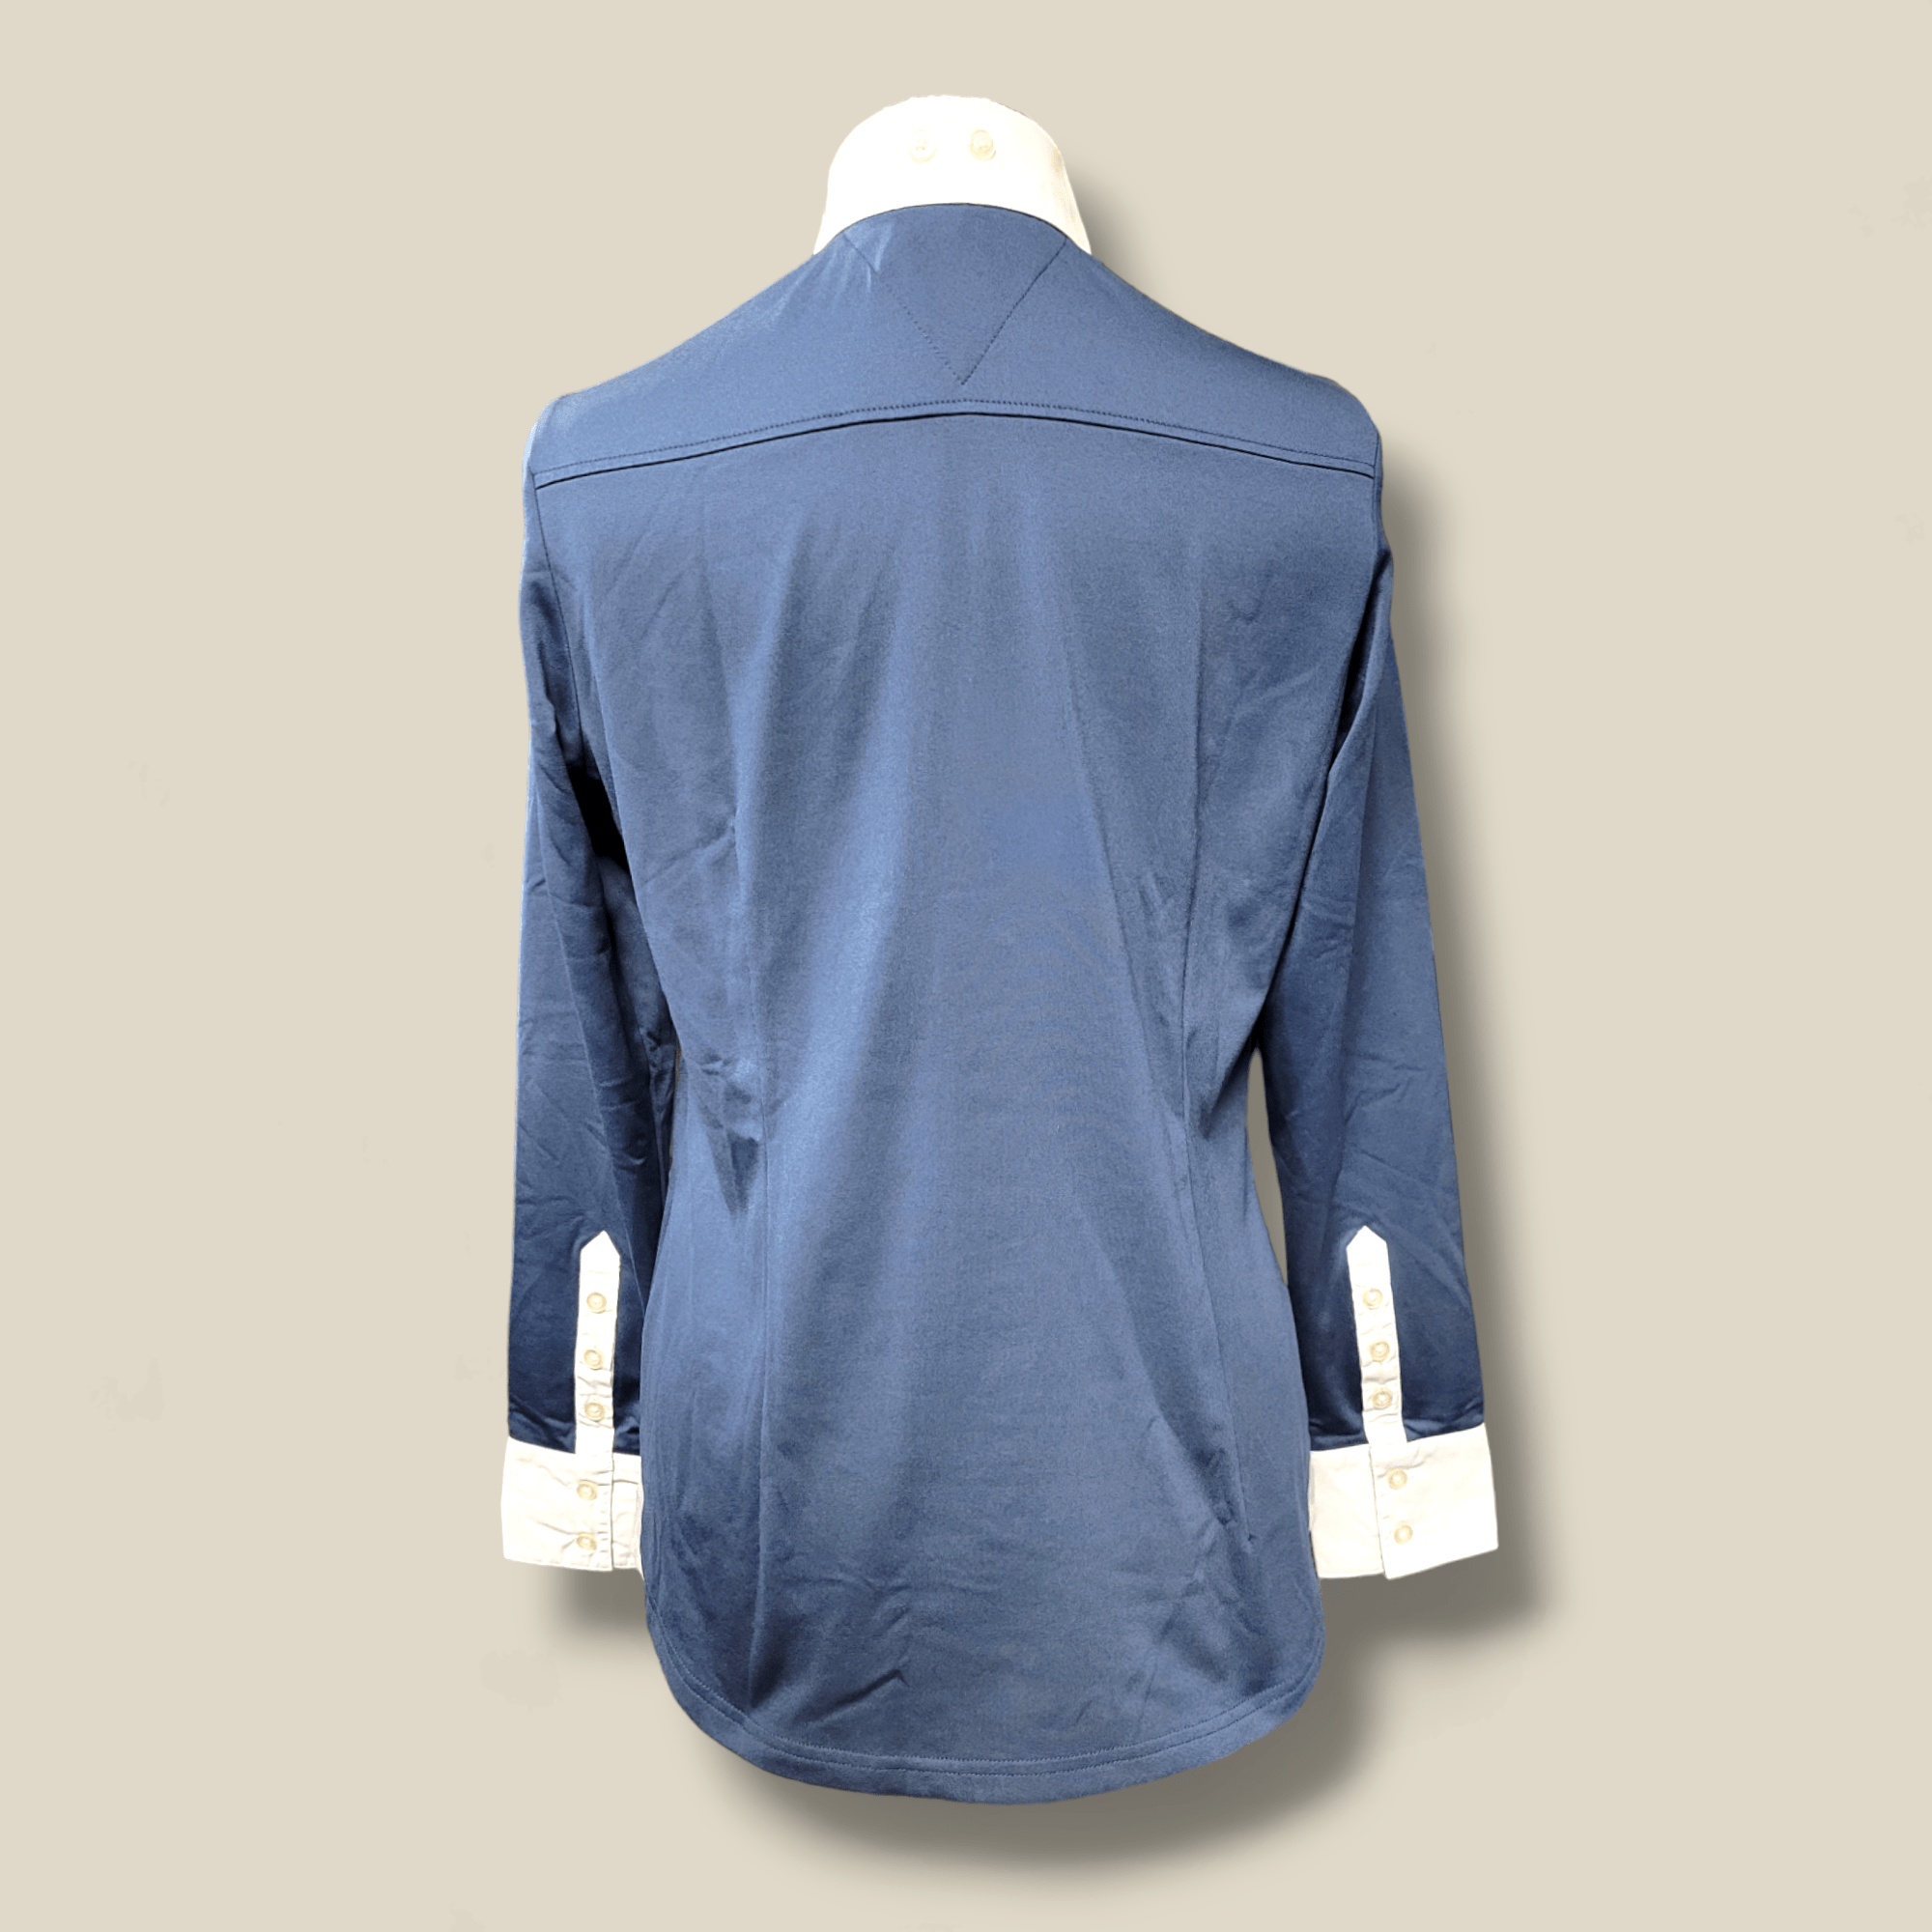 Ovation Julie Long Sleeve Fleece Lined Tech Shirt